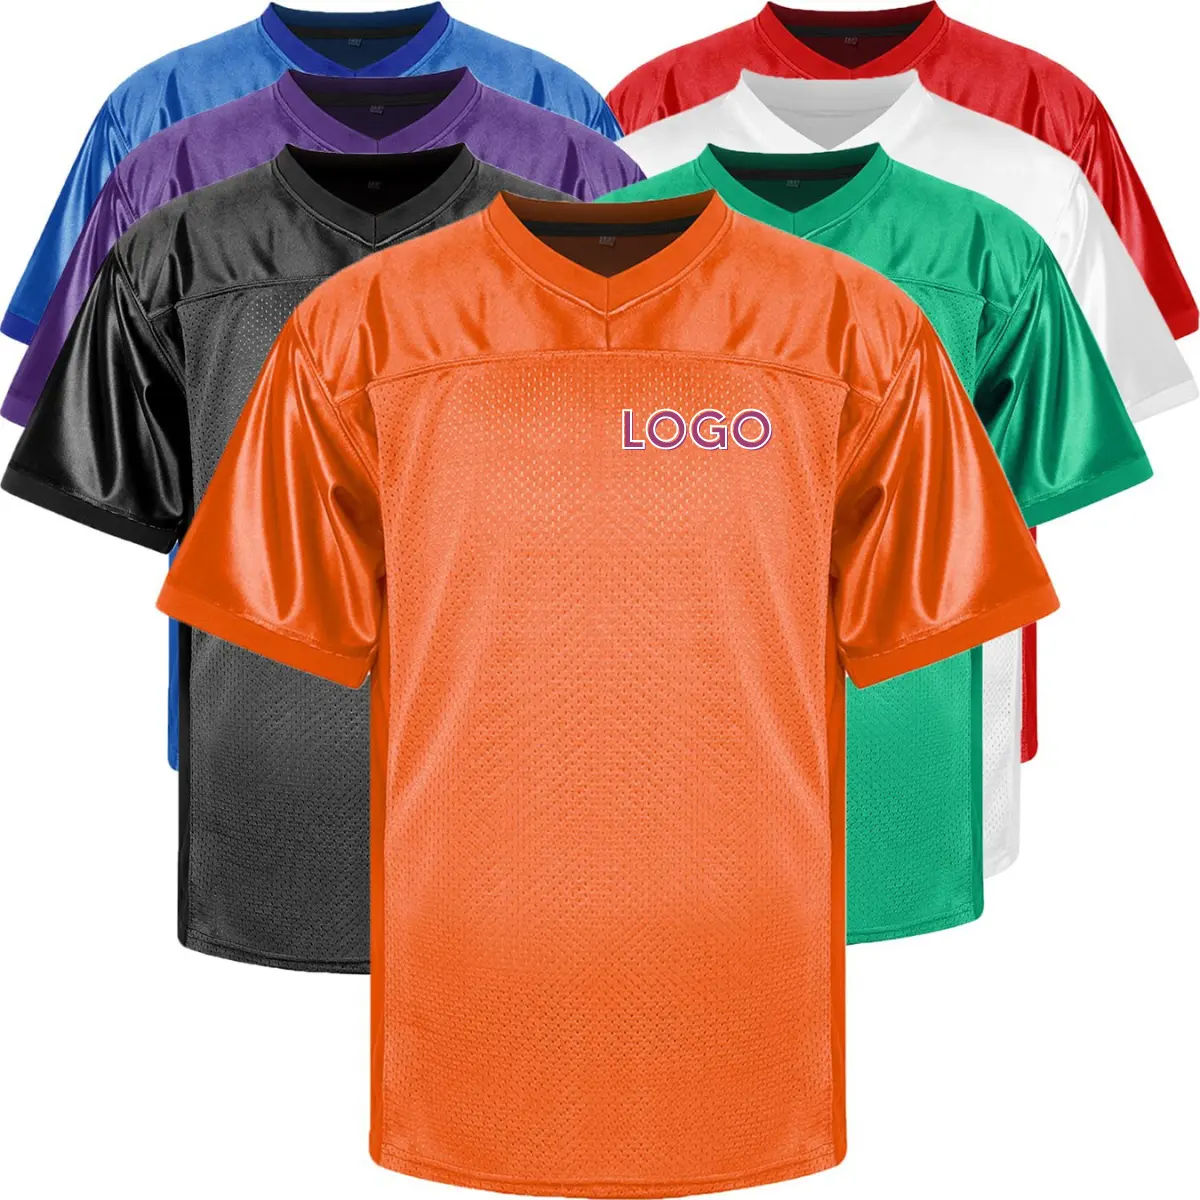 Camisetas de béisbol personalizadas, diseño de estrellas, camisetas de béisbol americanas, camisetas de béisbol bordadas personalizadas para 30 equipos